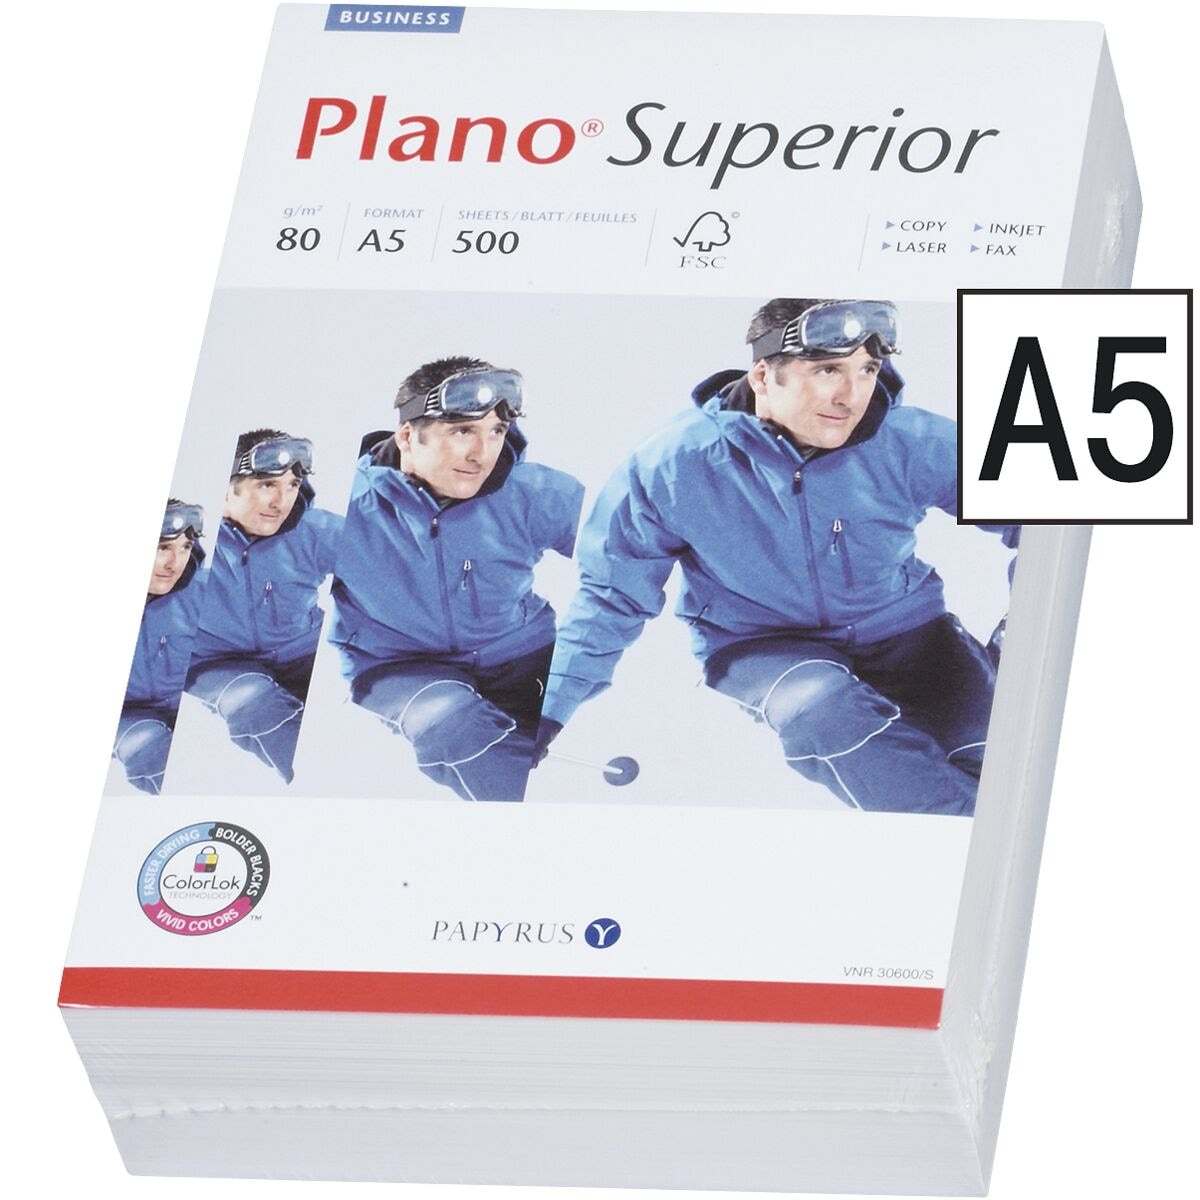 Multifunktionales Druckerpapier A5 Plano Superior - 500 Blatt gesamt